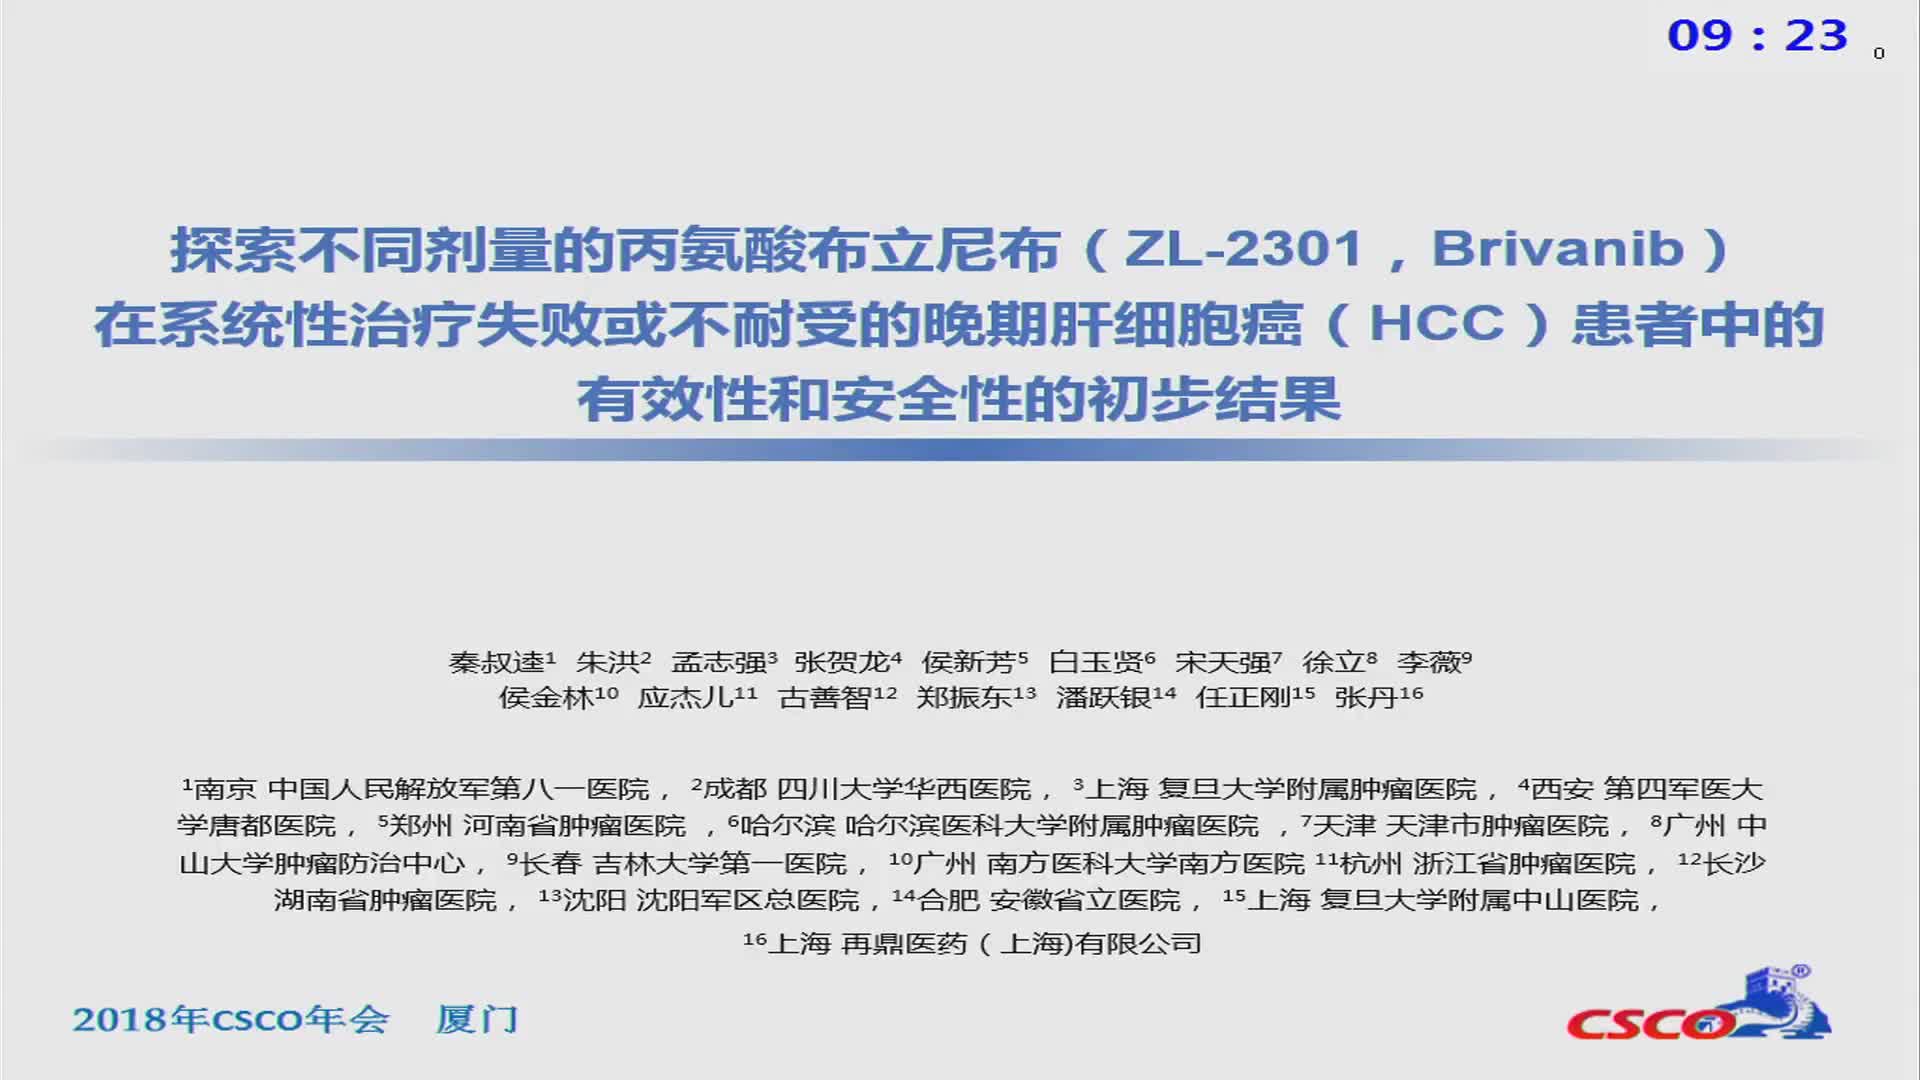 探索不同剂量的丙氨酸布立尼布（ZL-2301，Brivanib）在系统性治疗失败或不耐受的中国晚期肝细胞癌（HCC）患者中的有效性和安全性的II期研究